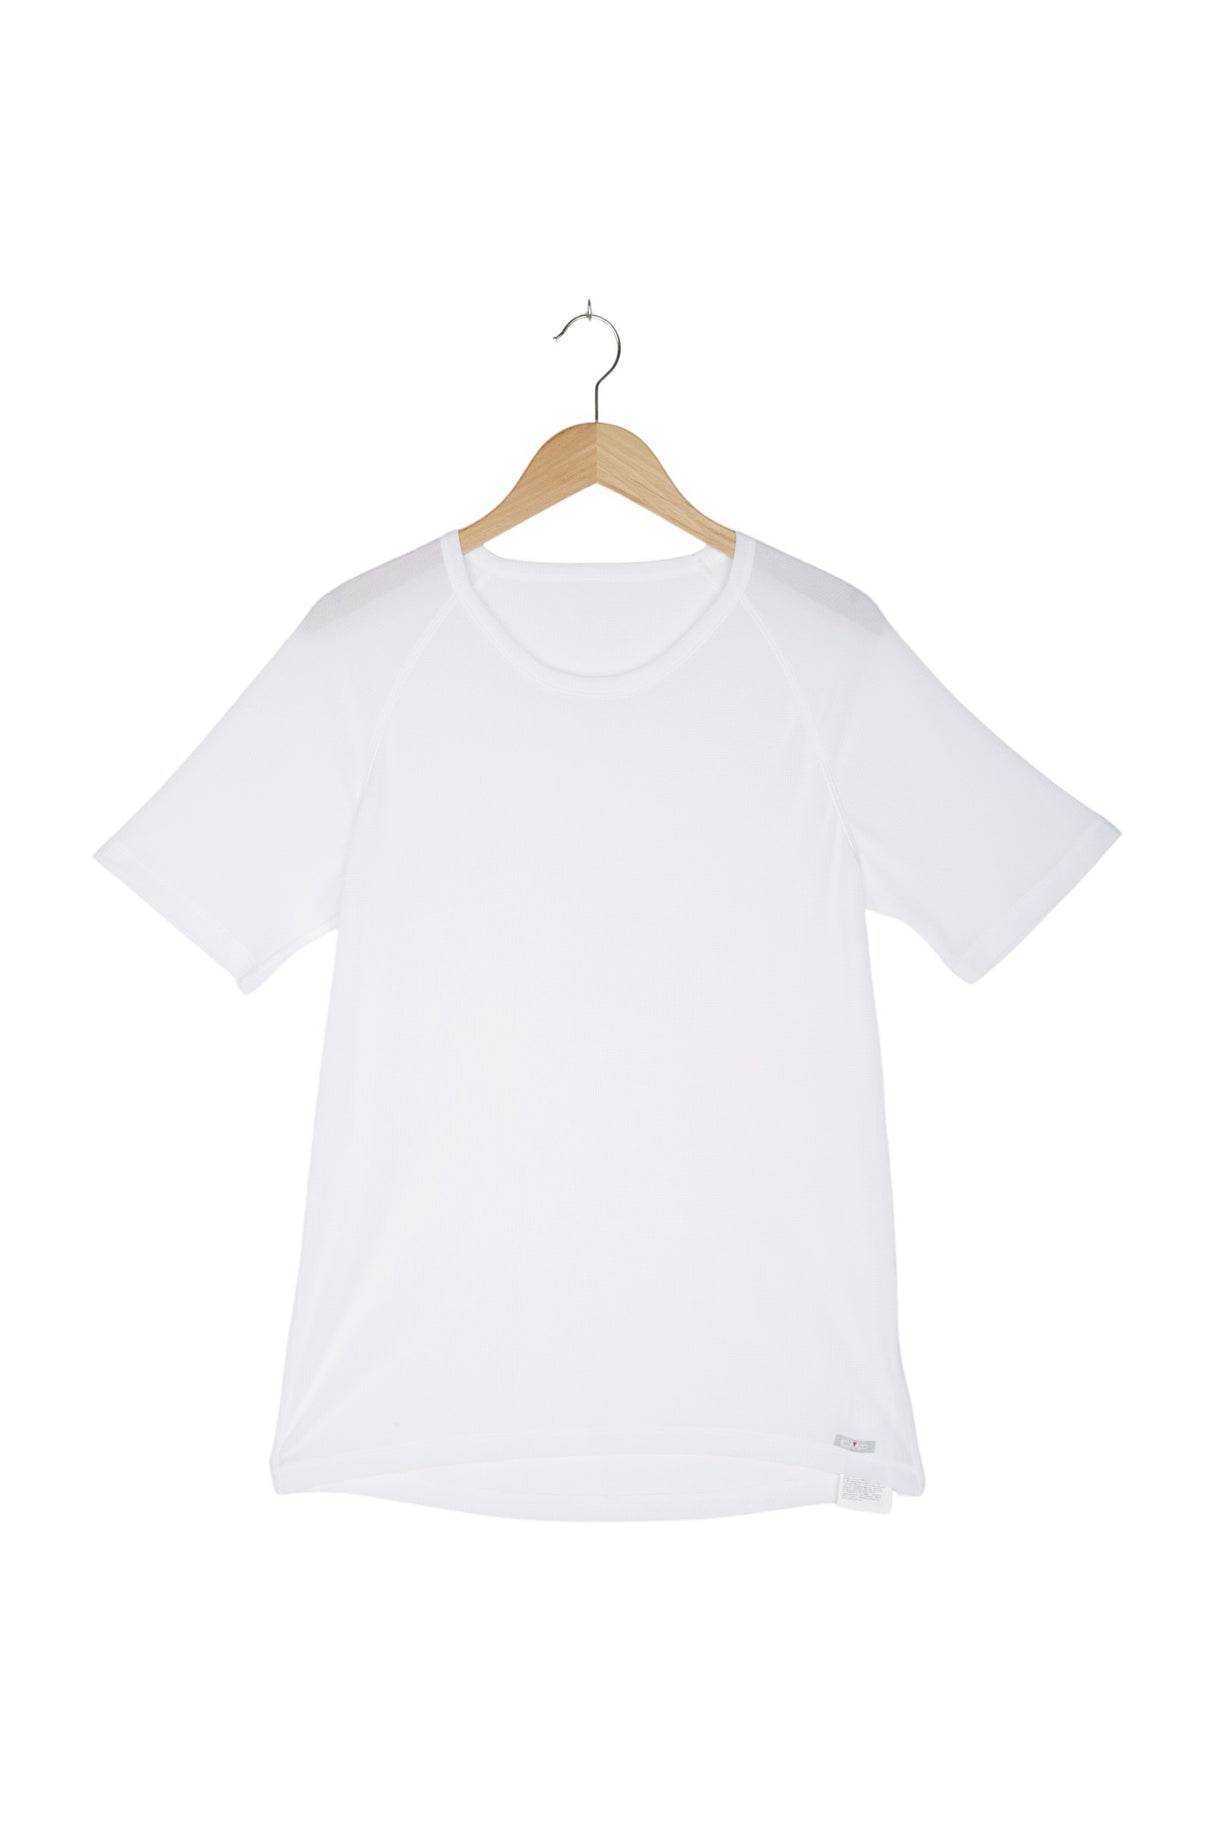 CMP T-Shirt Funktion für Herren